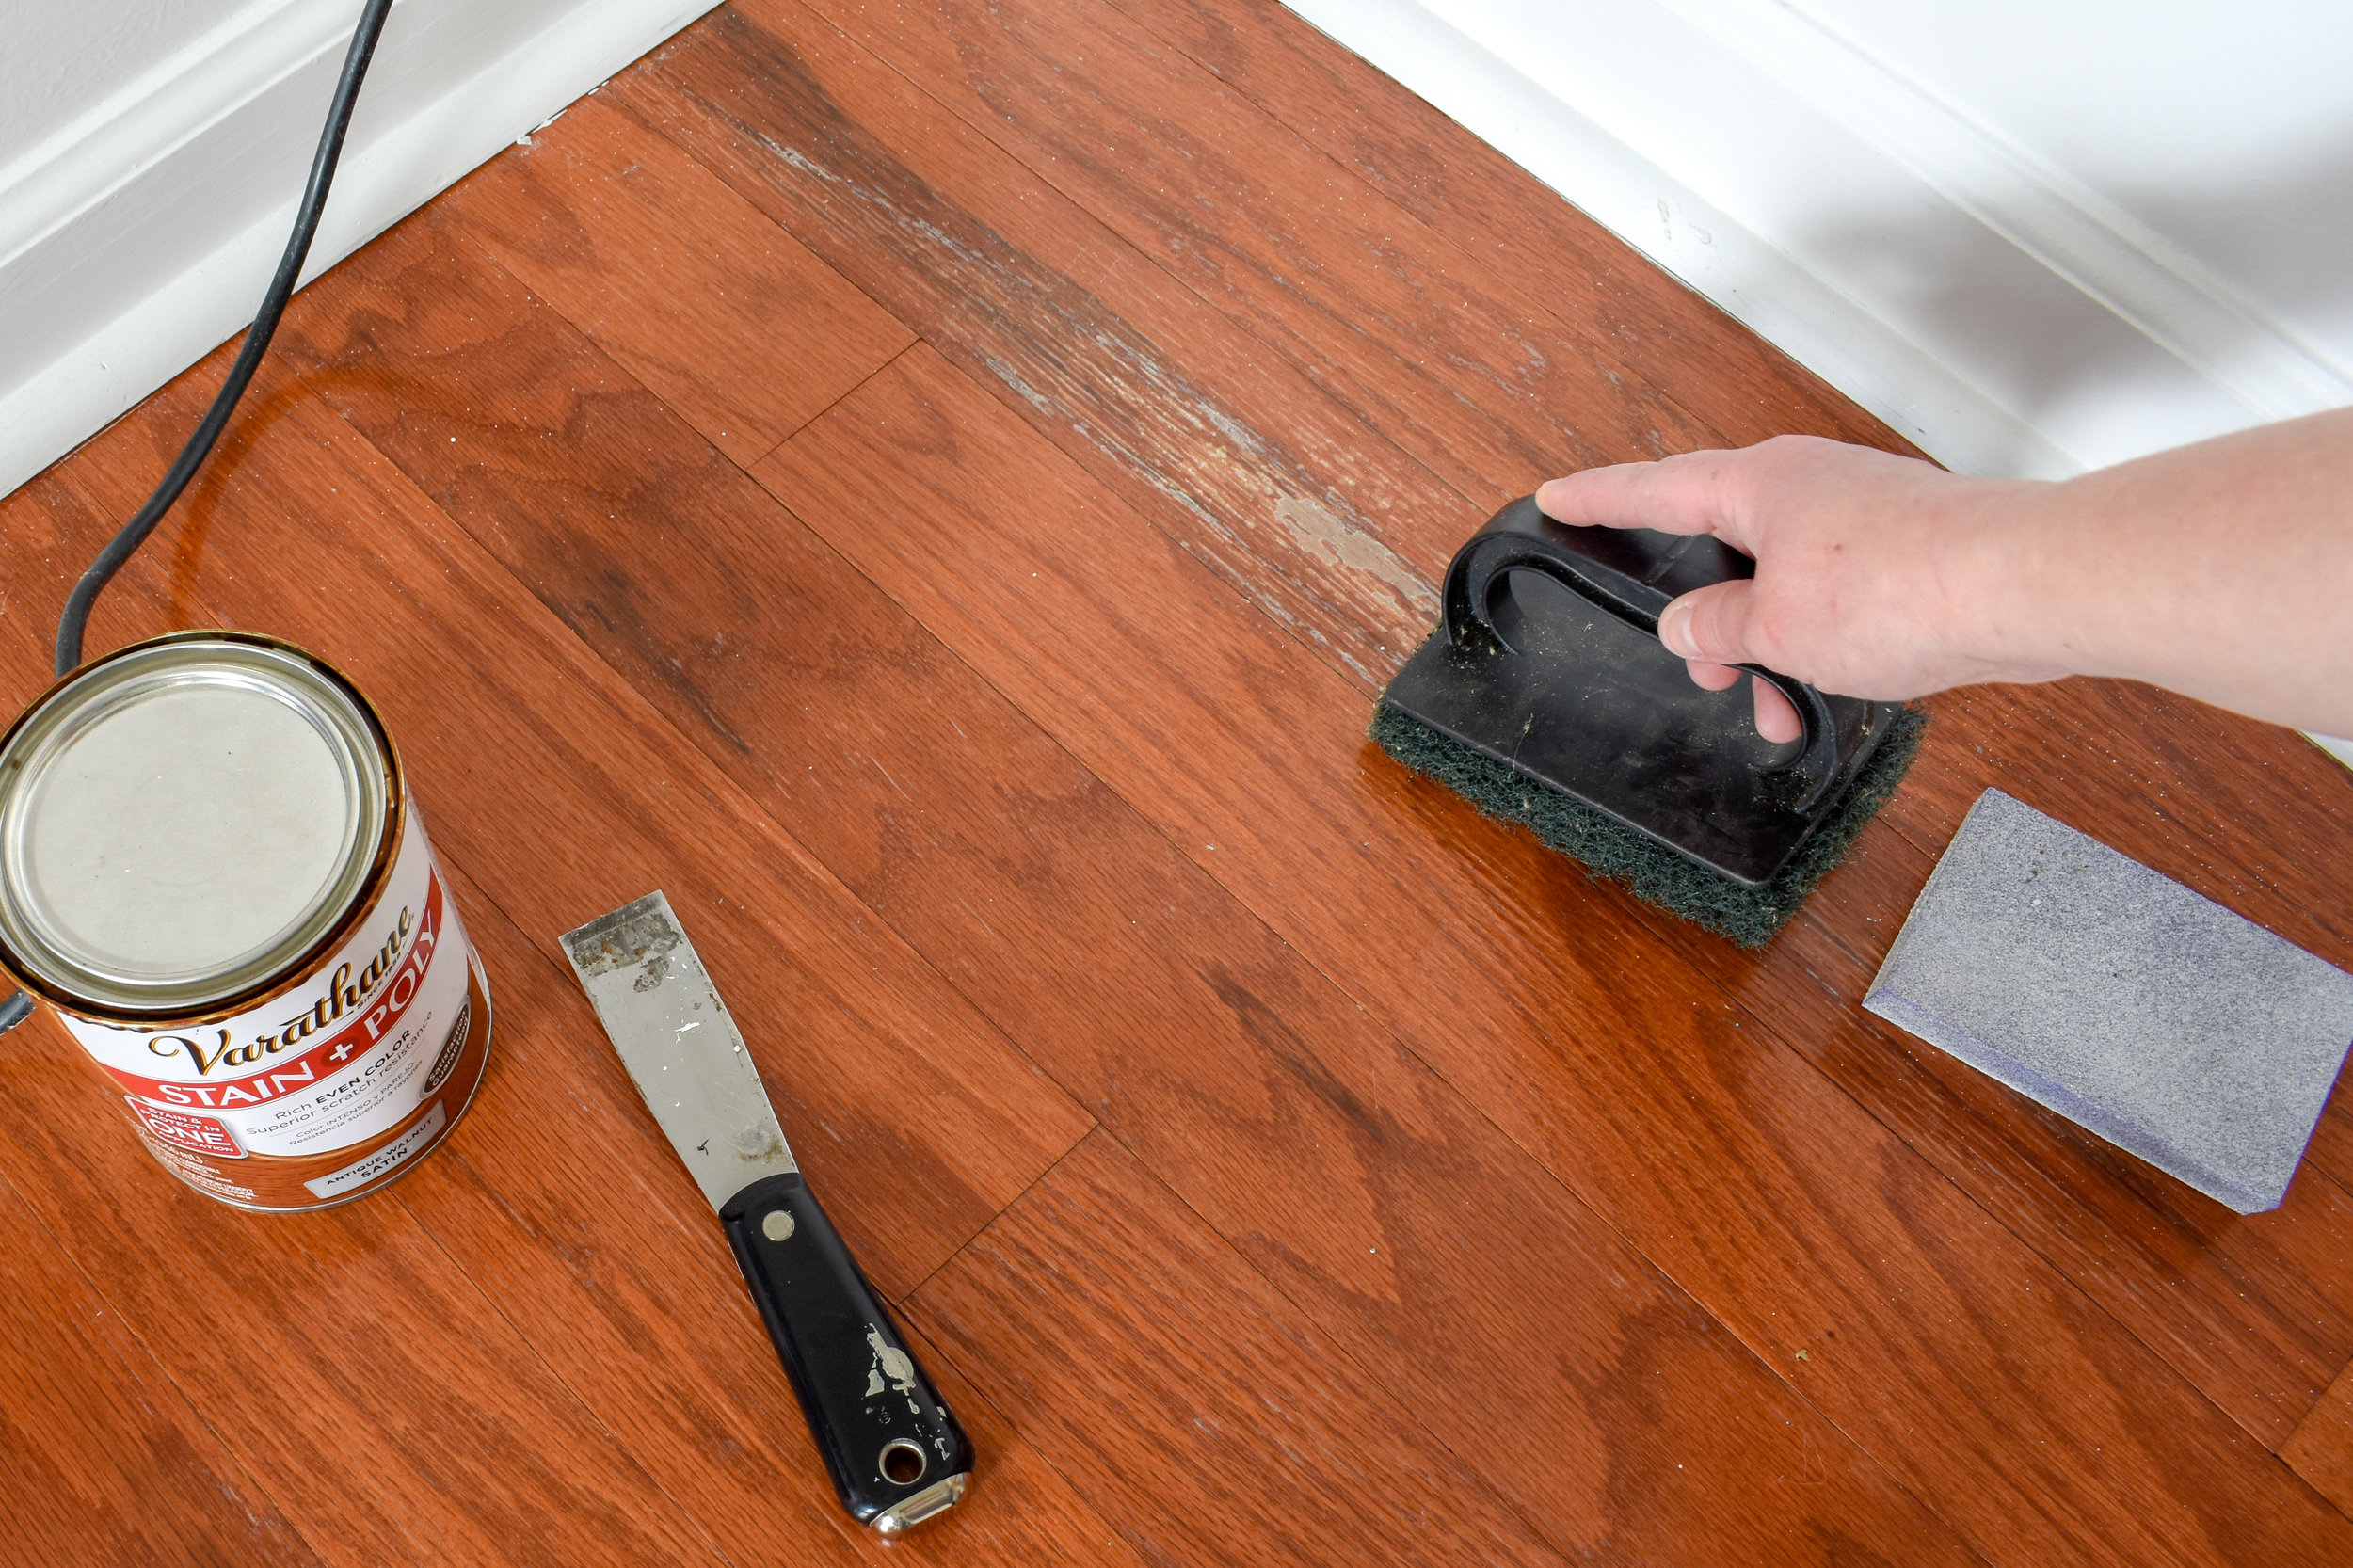 fixing moisture damage on the finish of hardwood floors